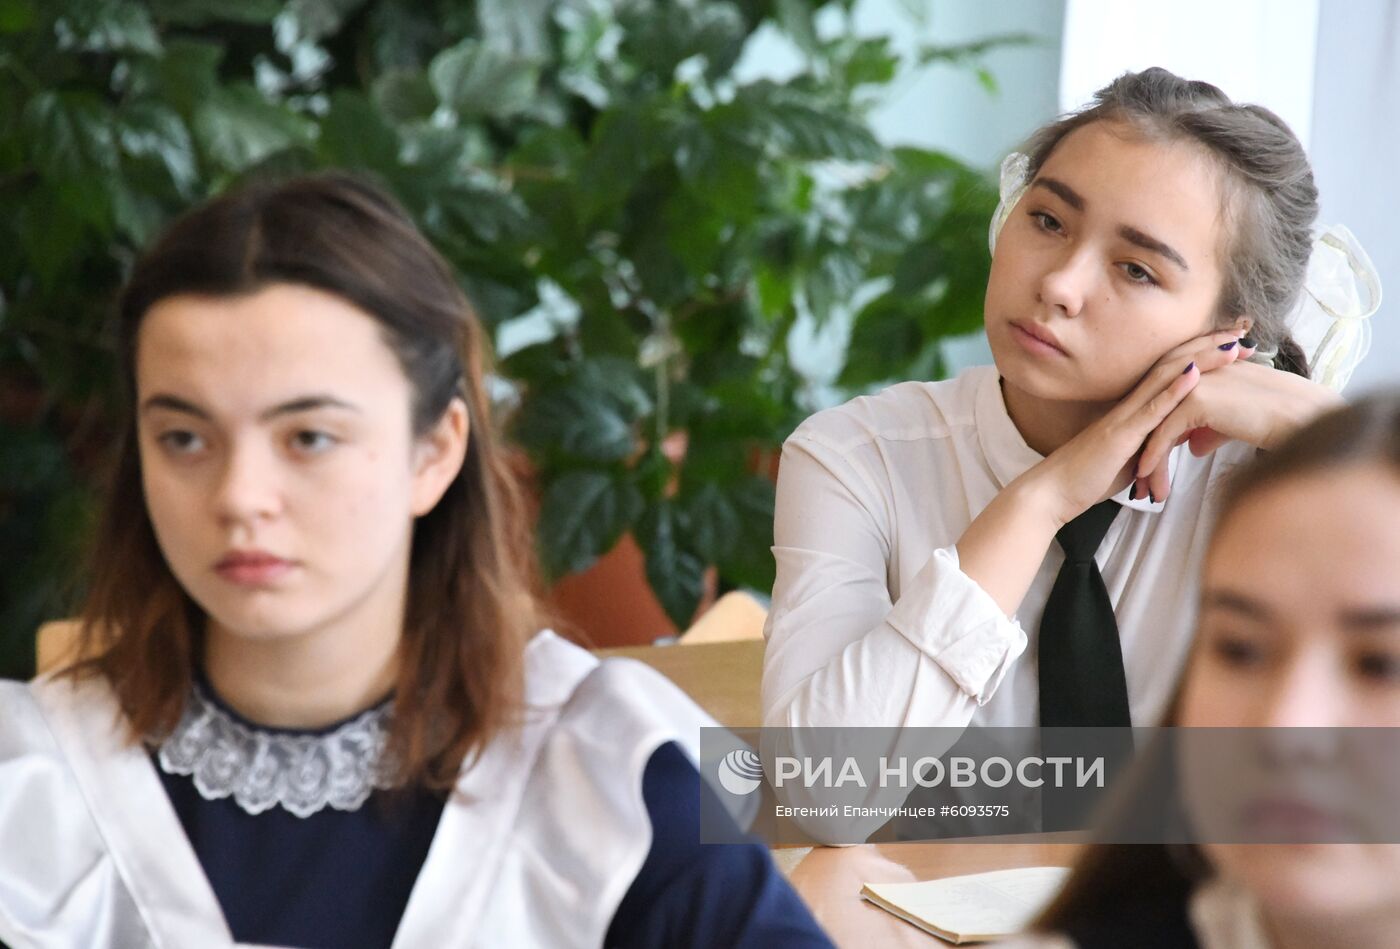 Итоговое сочинение по литературе в российских школах